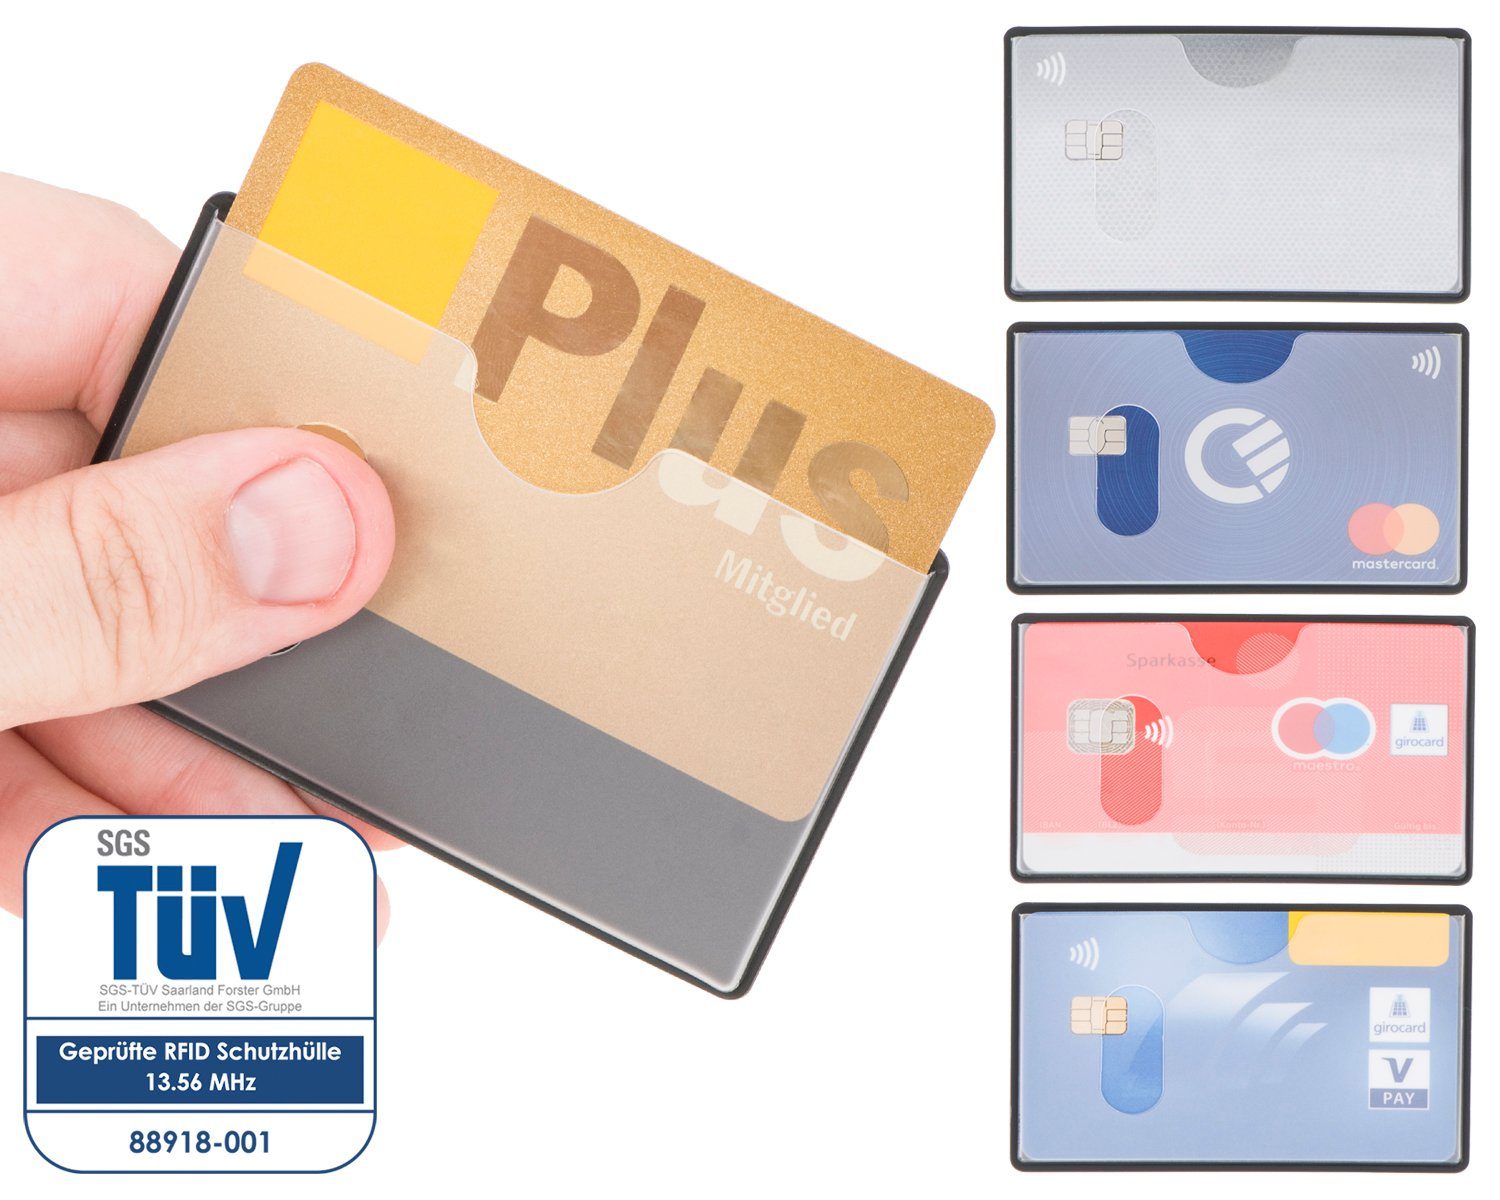 Schutz, Kreditkarte, - NFZ 6 RFID Kreditkartenhüllen valonic abgeschirmt, Scheckkarte 91 59 x Stück Einschub Etui transparent, RFID-Block oben valonic mm,